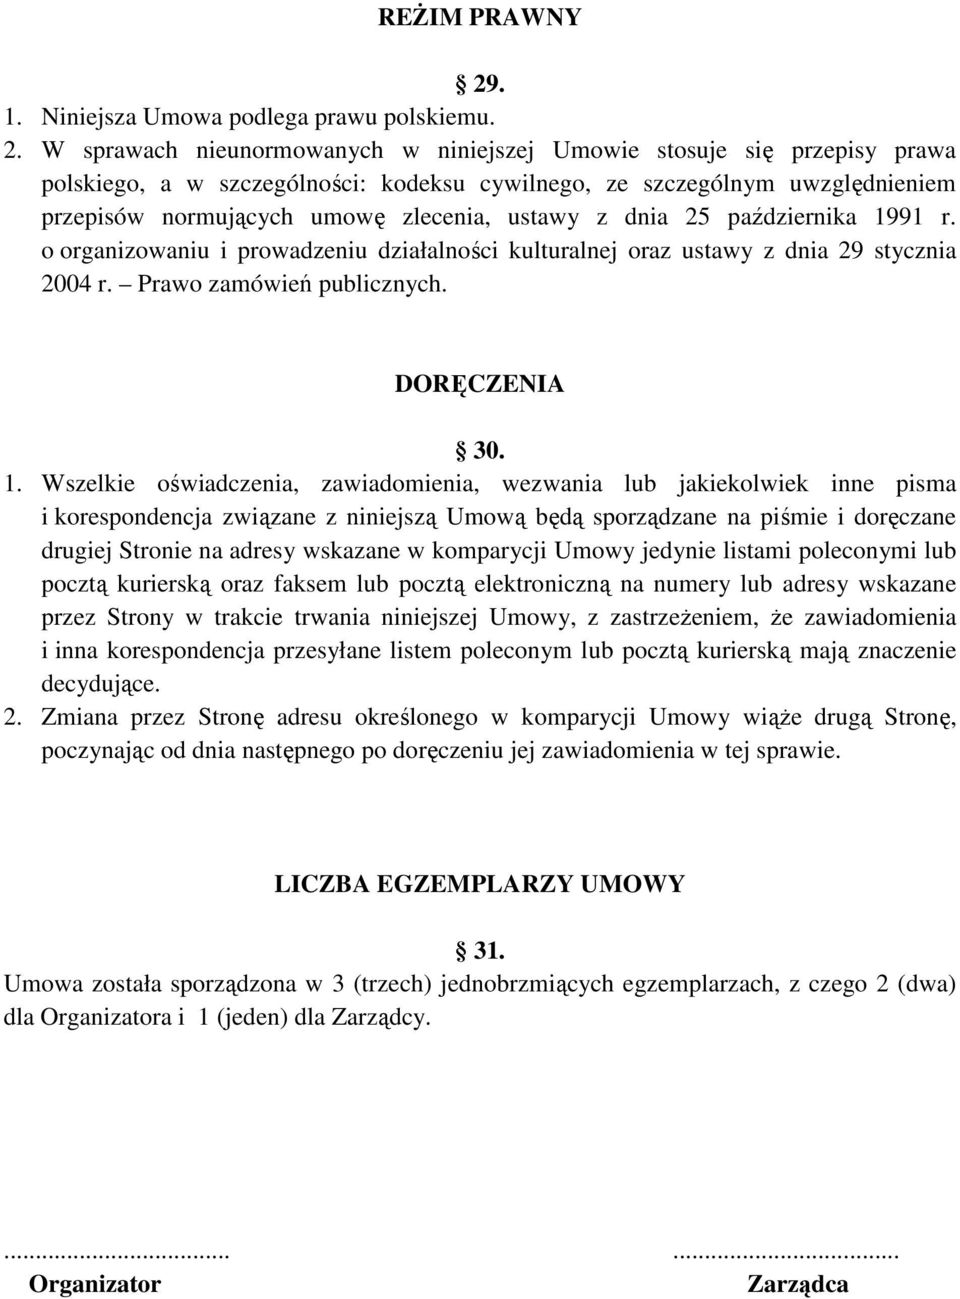 W sprawach nieunormowanych w niniejszej Umowie stosuje się przepisy prawa polskiego, a w szczególności: kodeksu cywilnego, ze szczególnym uwzględnieniem przepisów normujących umowę zlecenia, ustawy z